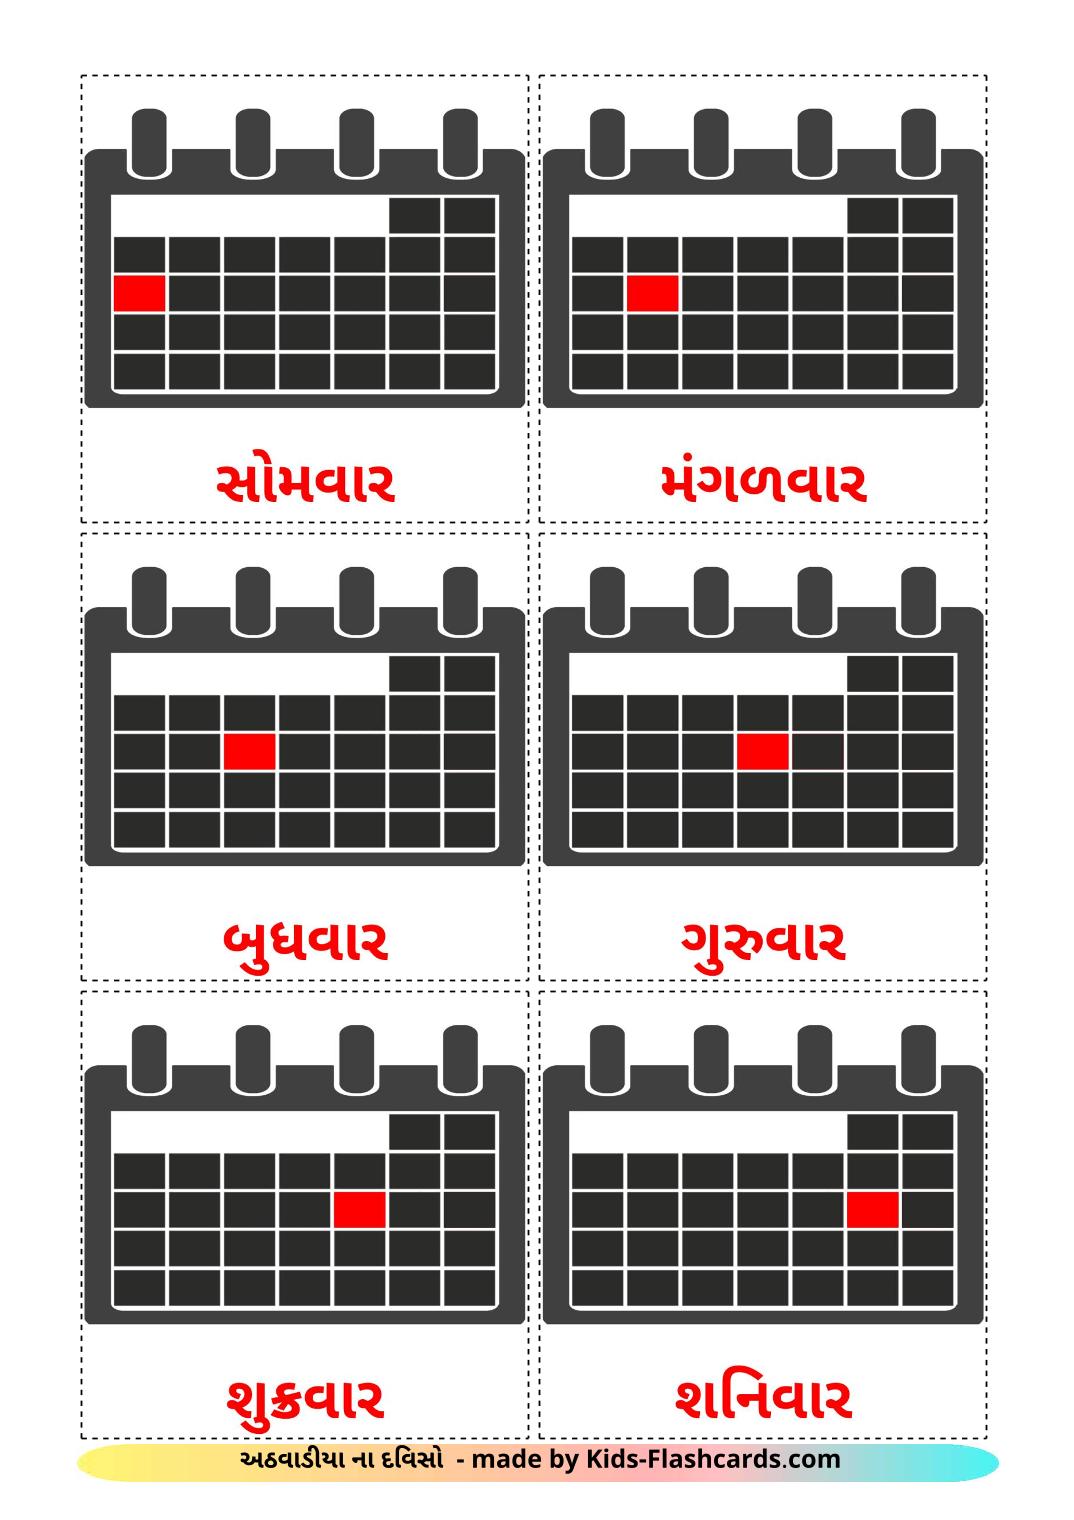 Wochentage - 12 kostenlose, druckbare Gujarati Flashcards 